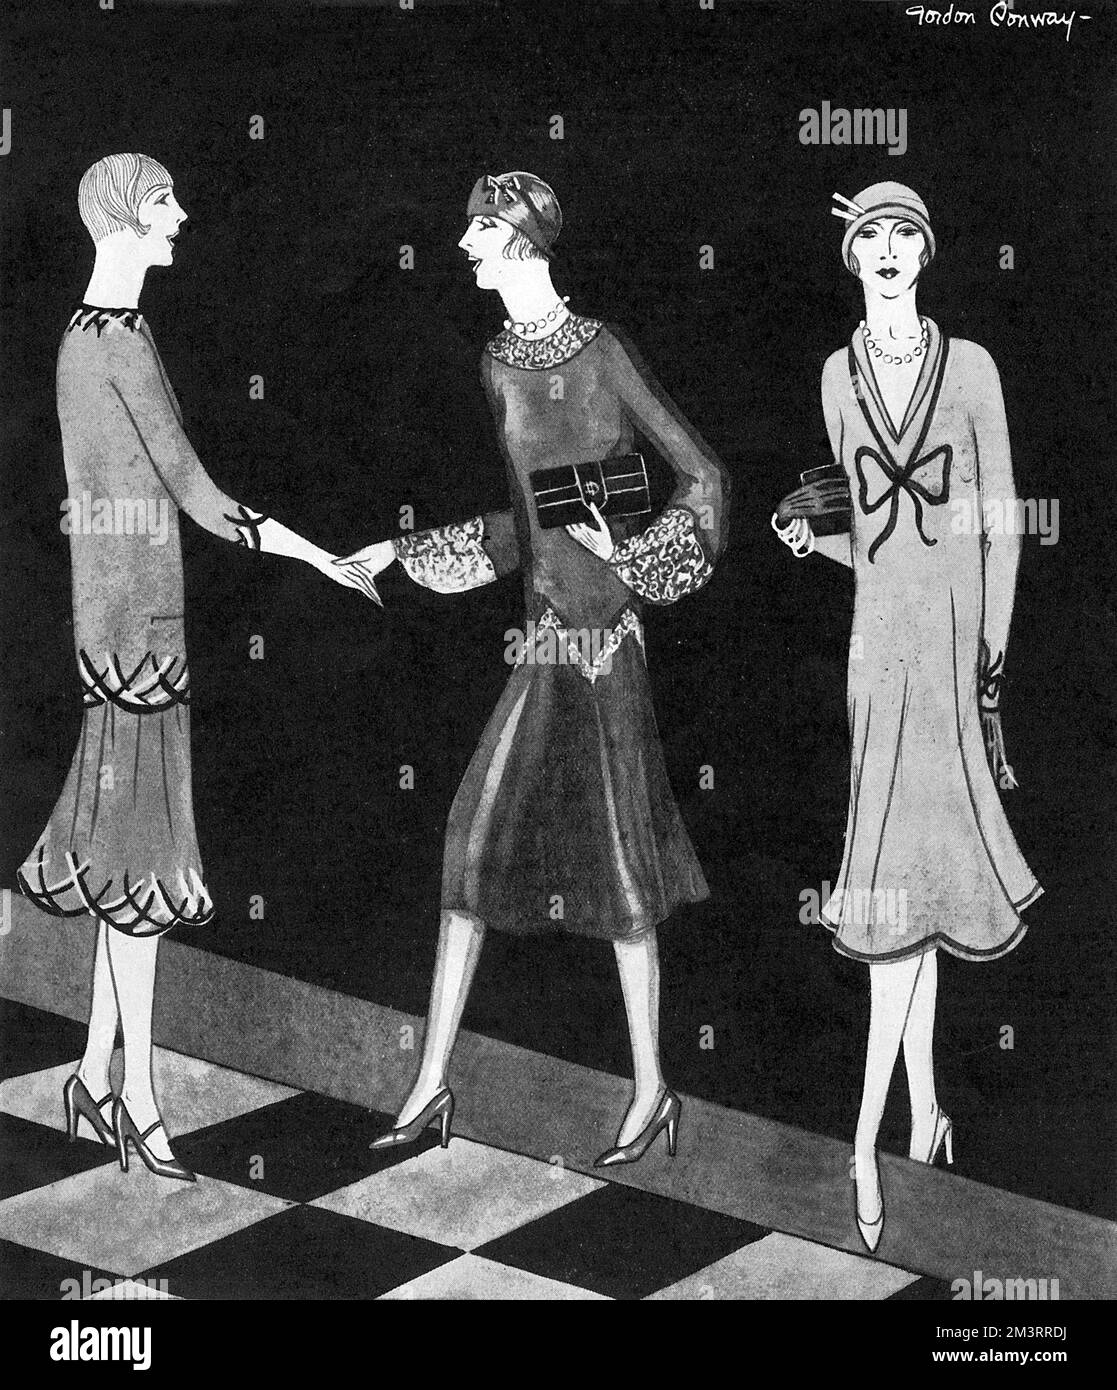 Originalentwürfe von Mode- und Theaterdesignern, Gordon Conway in der Zeitschrift Eve, 1925, mit Fokus auf dem ausgestellten Rock. Auf der linken Seite ein Pullover und Rock in nilgrüner Kascha mit gelber und grüner Stickerei. Das einteilige Kleid in der Mitte besteht aus schwarzem Chiffon-Samt mit Ecru-Spitze und Puffärmel am Handgelenk. Auf der rechten Seite ein Kleid der Prinzessinnen-Überzeugungskunst mit rundem Rock in Delfter blauer Kascha mit einem Hauch rosafarbener Kascha. Datum: 1925 Stockfoto